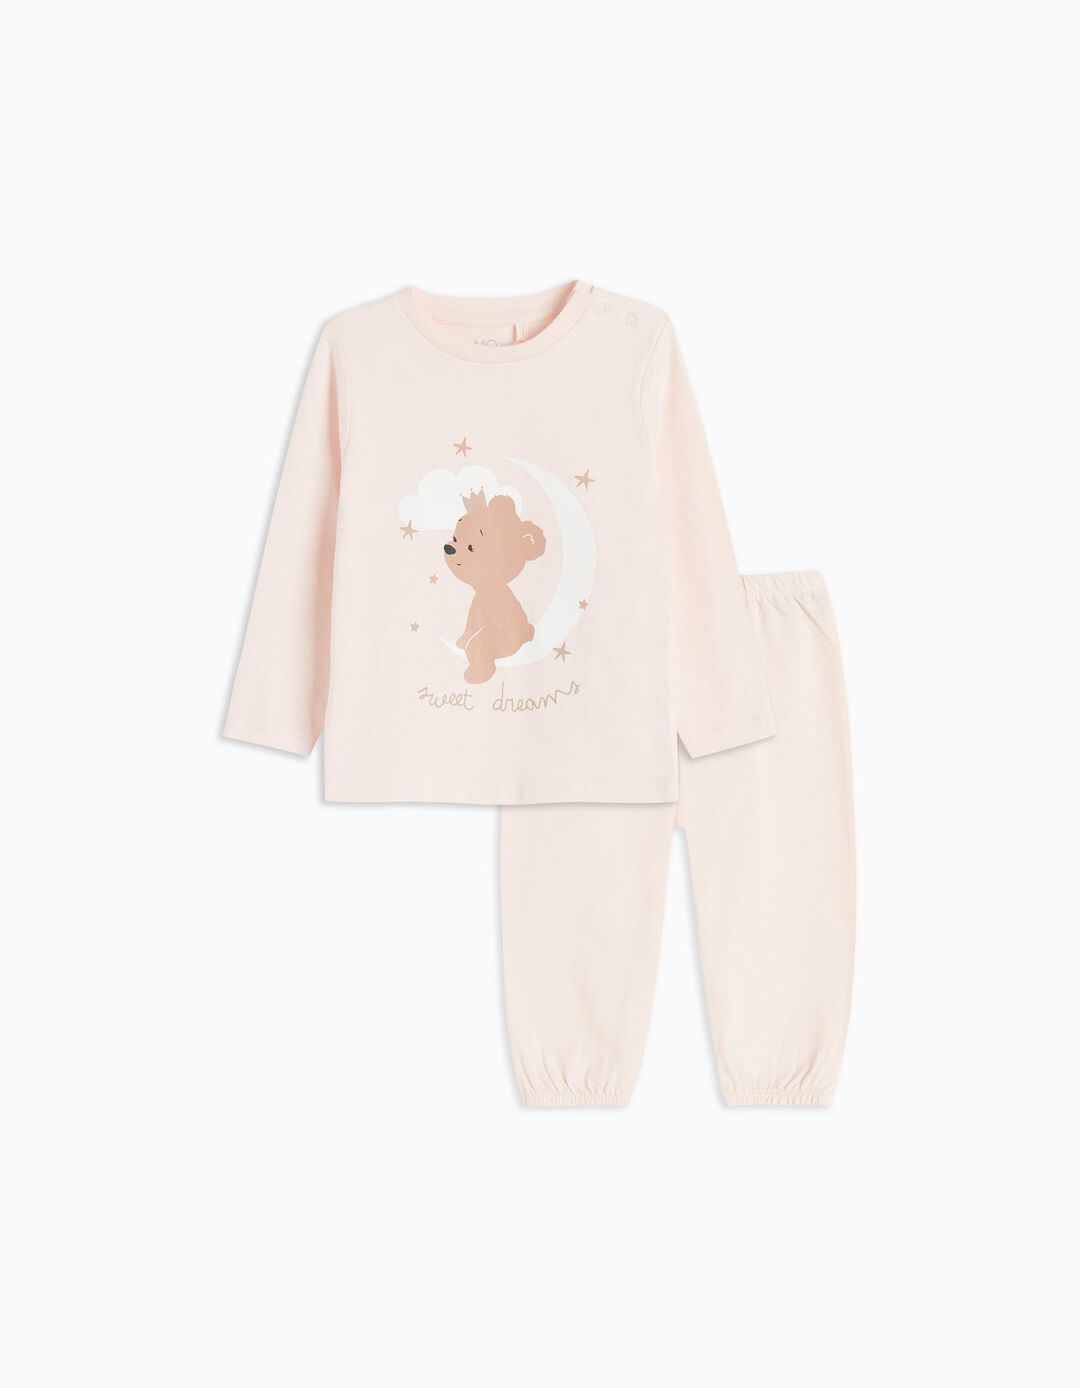 Pyjamas, Baby Girls, Light Pink